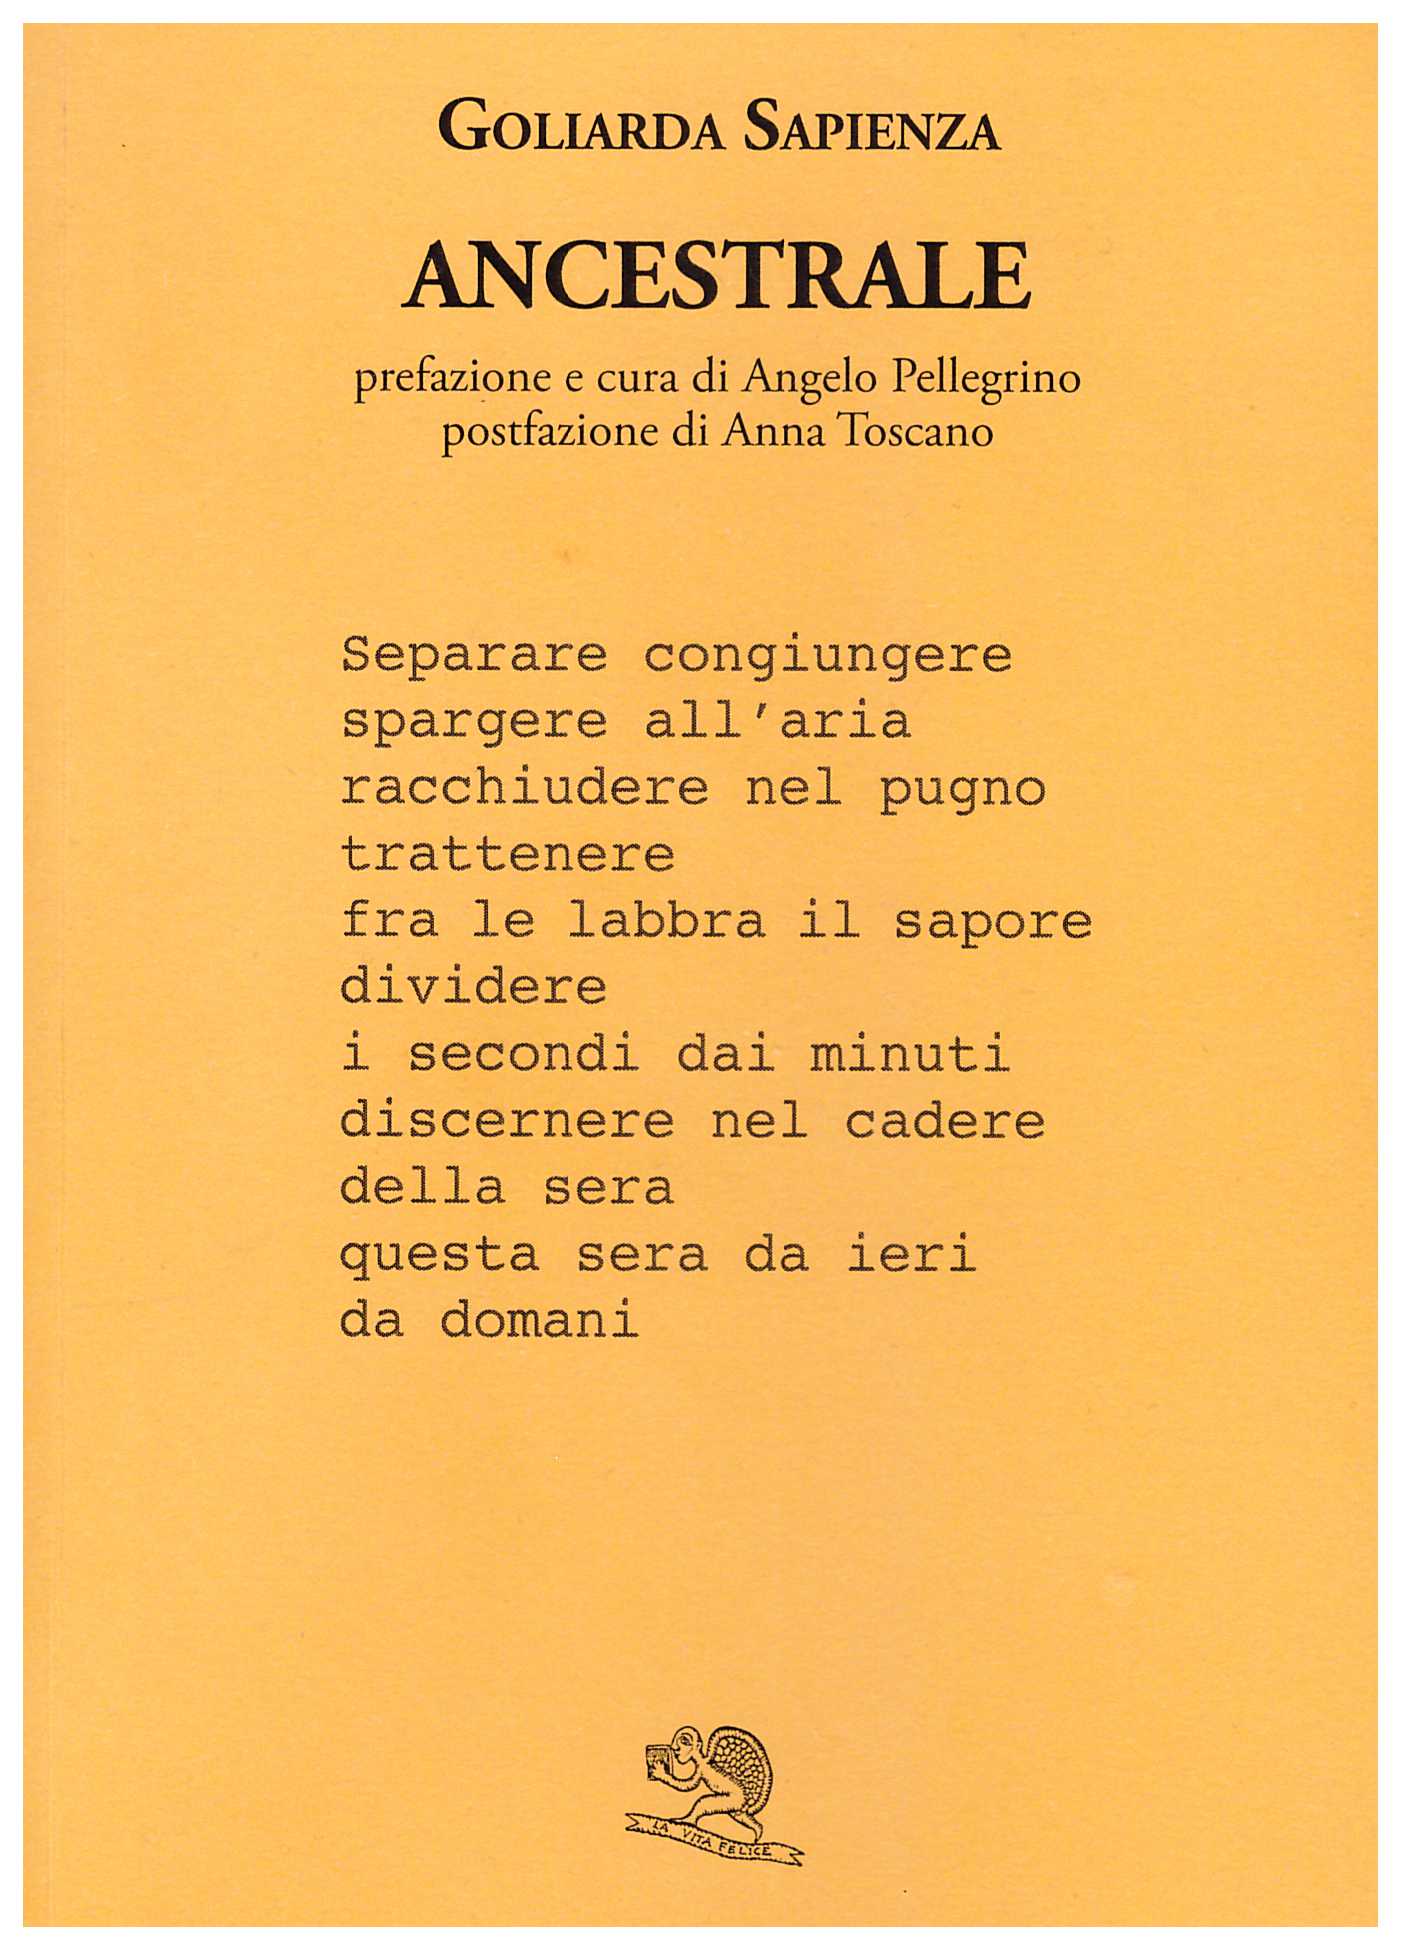 Poesie Di Natale In Dialetto Siciliano.Sette Poesie Da Ancestrale Di Goliarda Sapienza Poetarum Silva